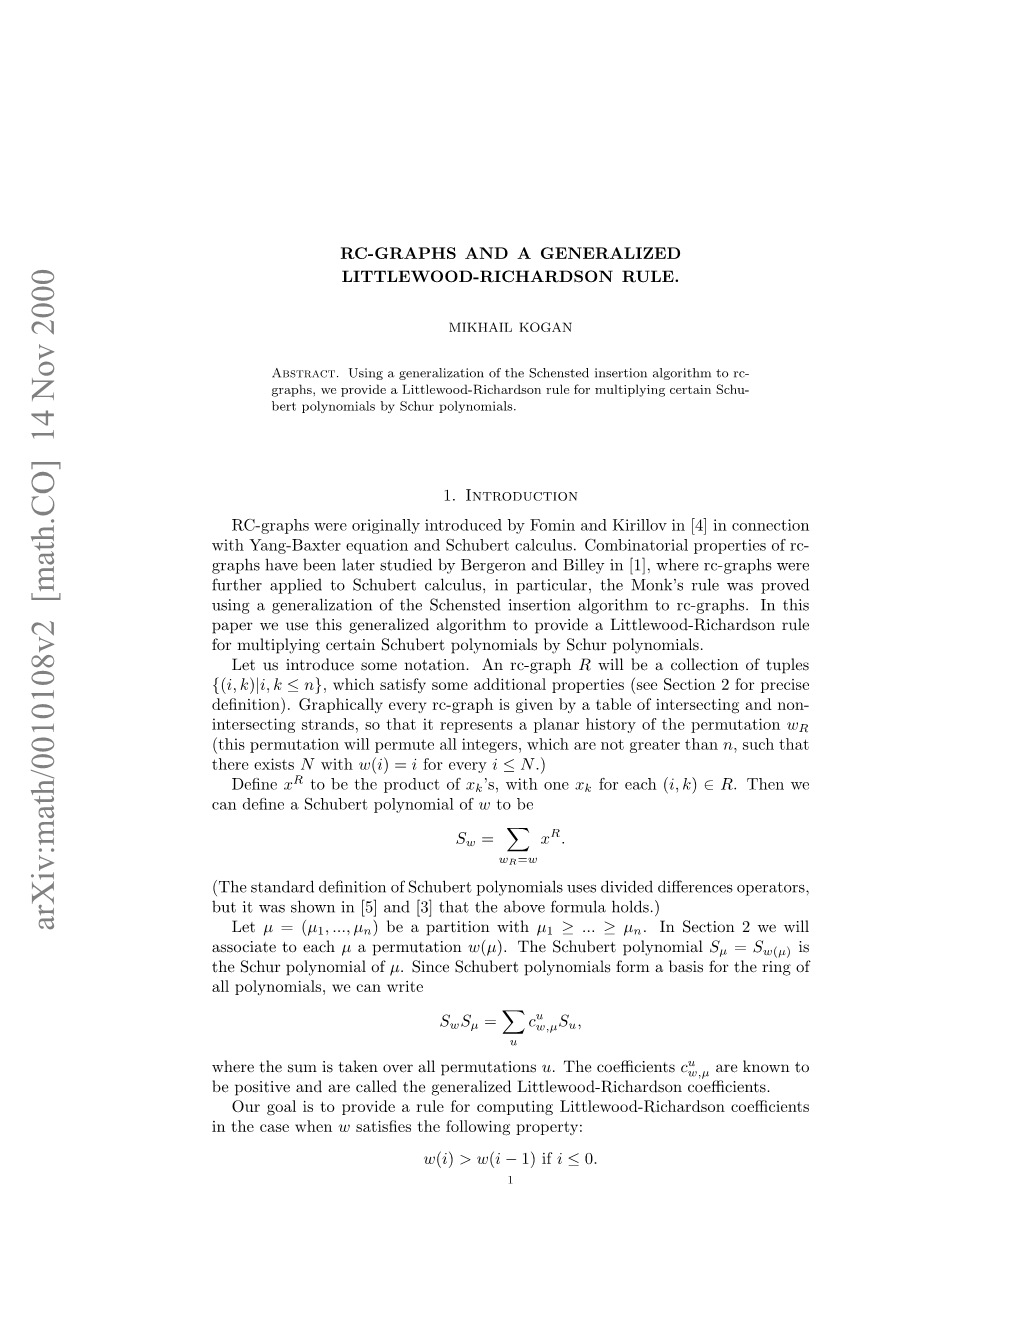 Arxiv:Math/0010108V2 [Math.CO] 14 Nov 2000 Soit Oeach to Associate Ae Eueti Eeaie Loih Opoiealittlewood-Richa Polynomials